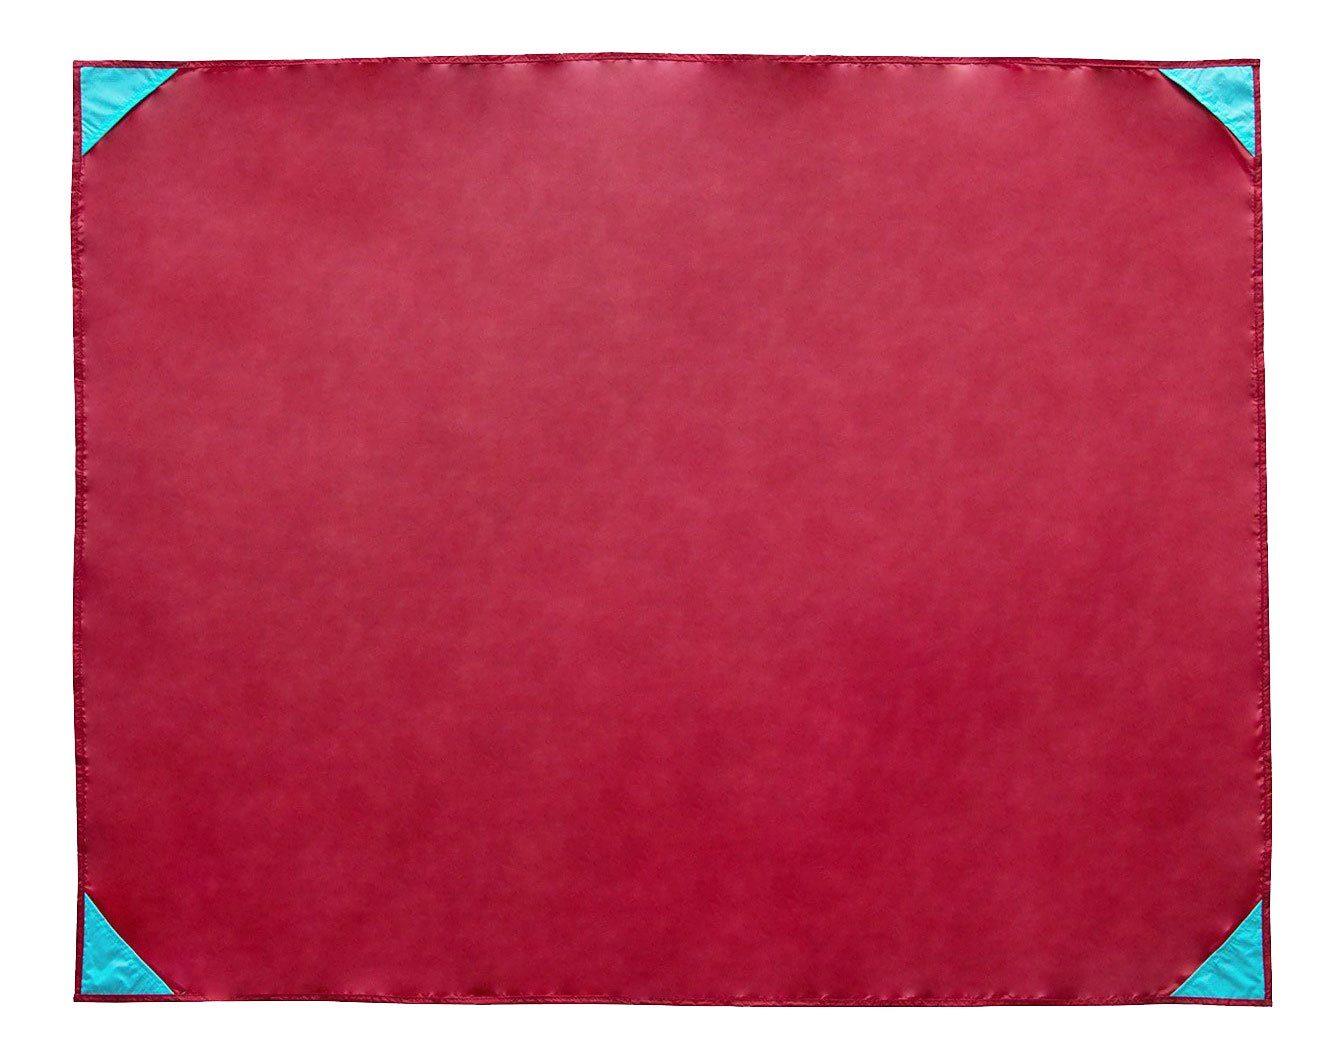 Picknickdecke, ZOLLNER, 135 x 165 cm, 100% Polyester, wasserabweisend, praktische Tragetasche rot